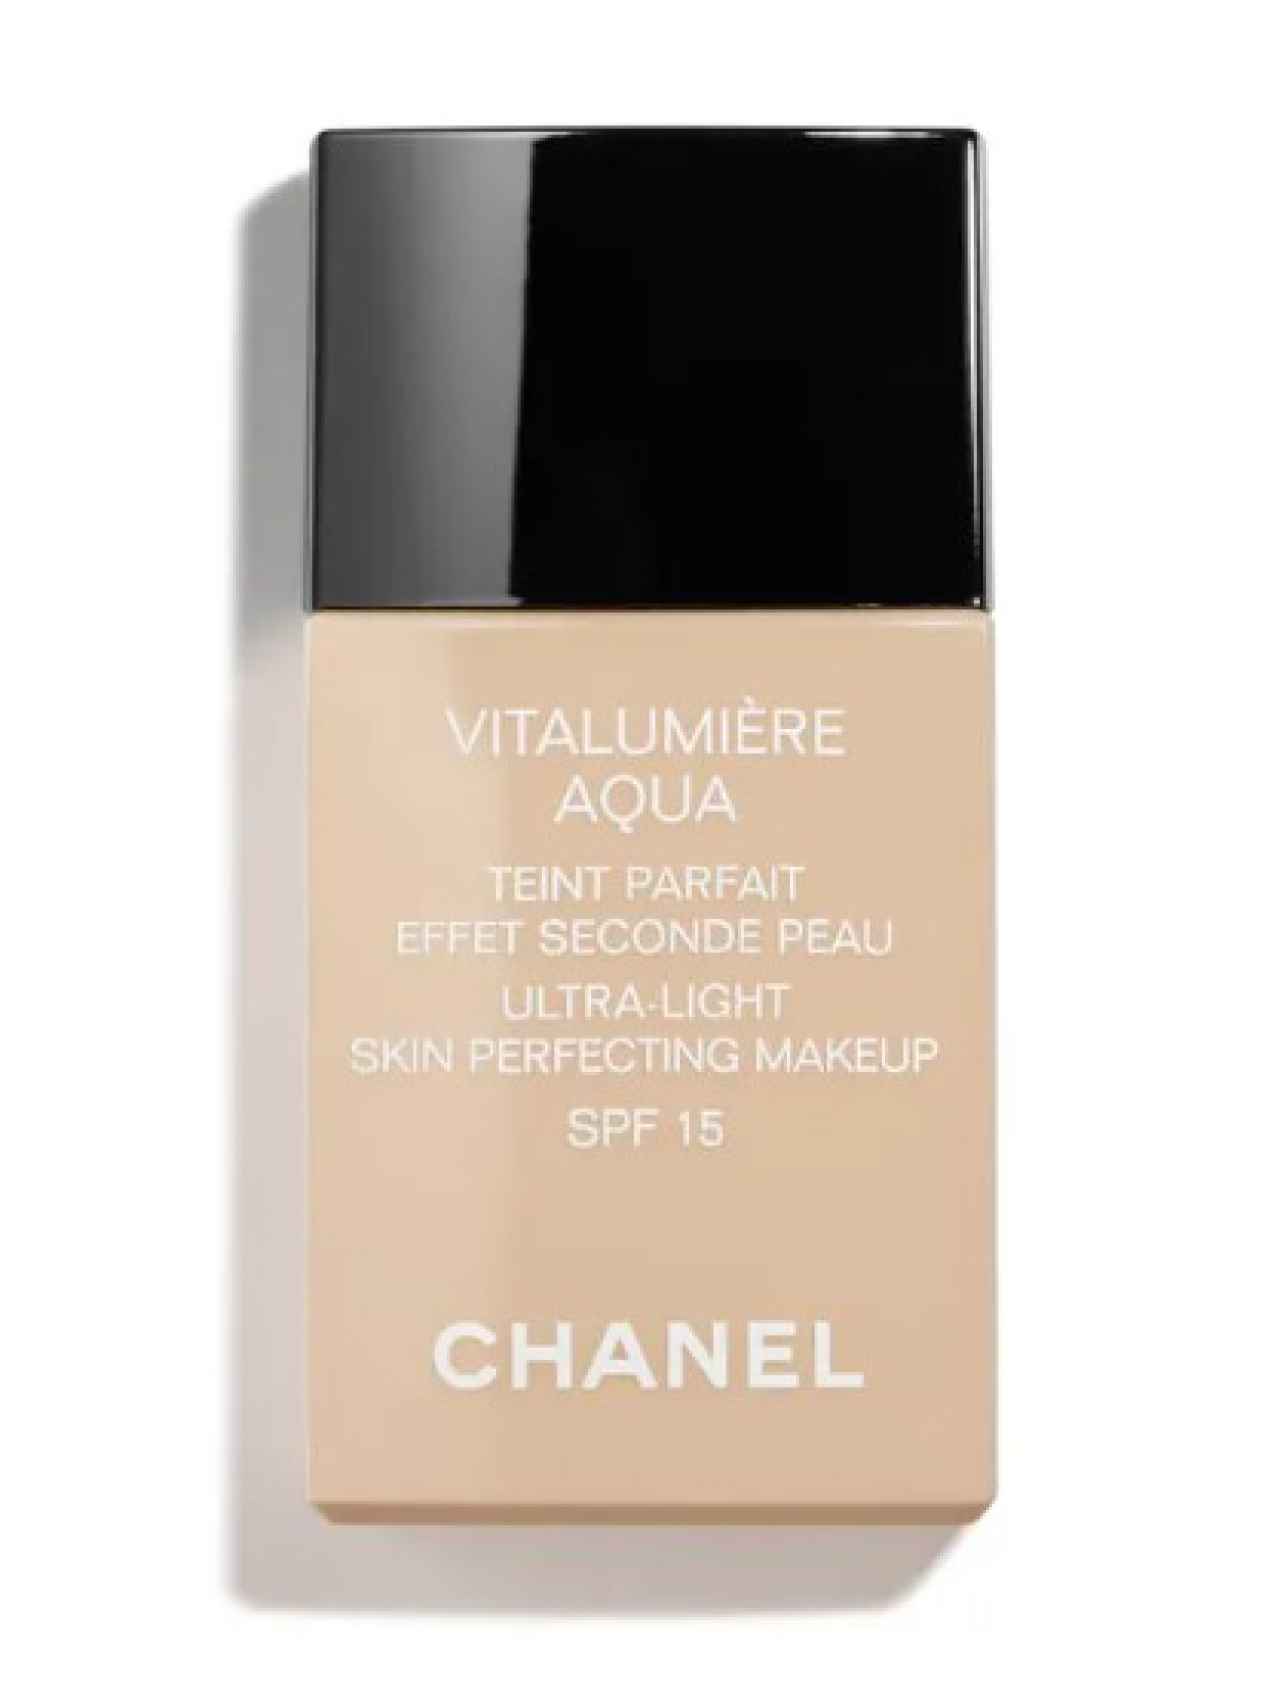 Vitalumière Aqua de Chanel.